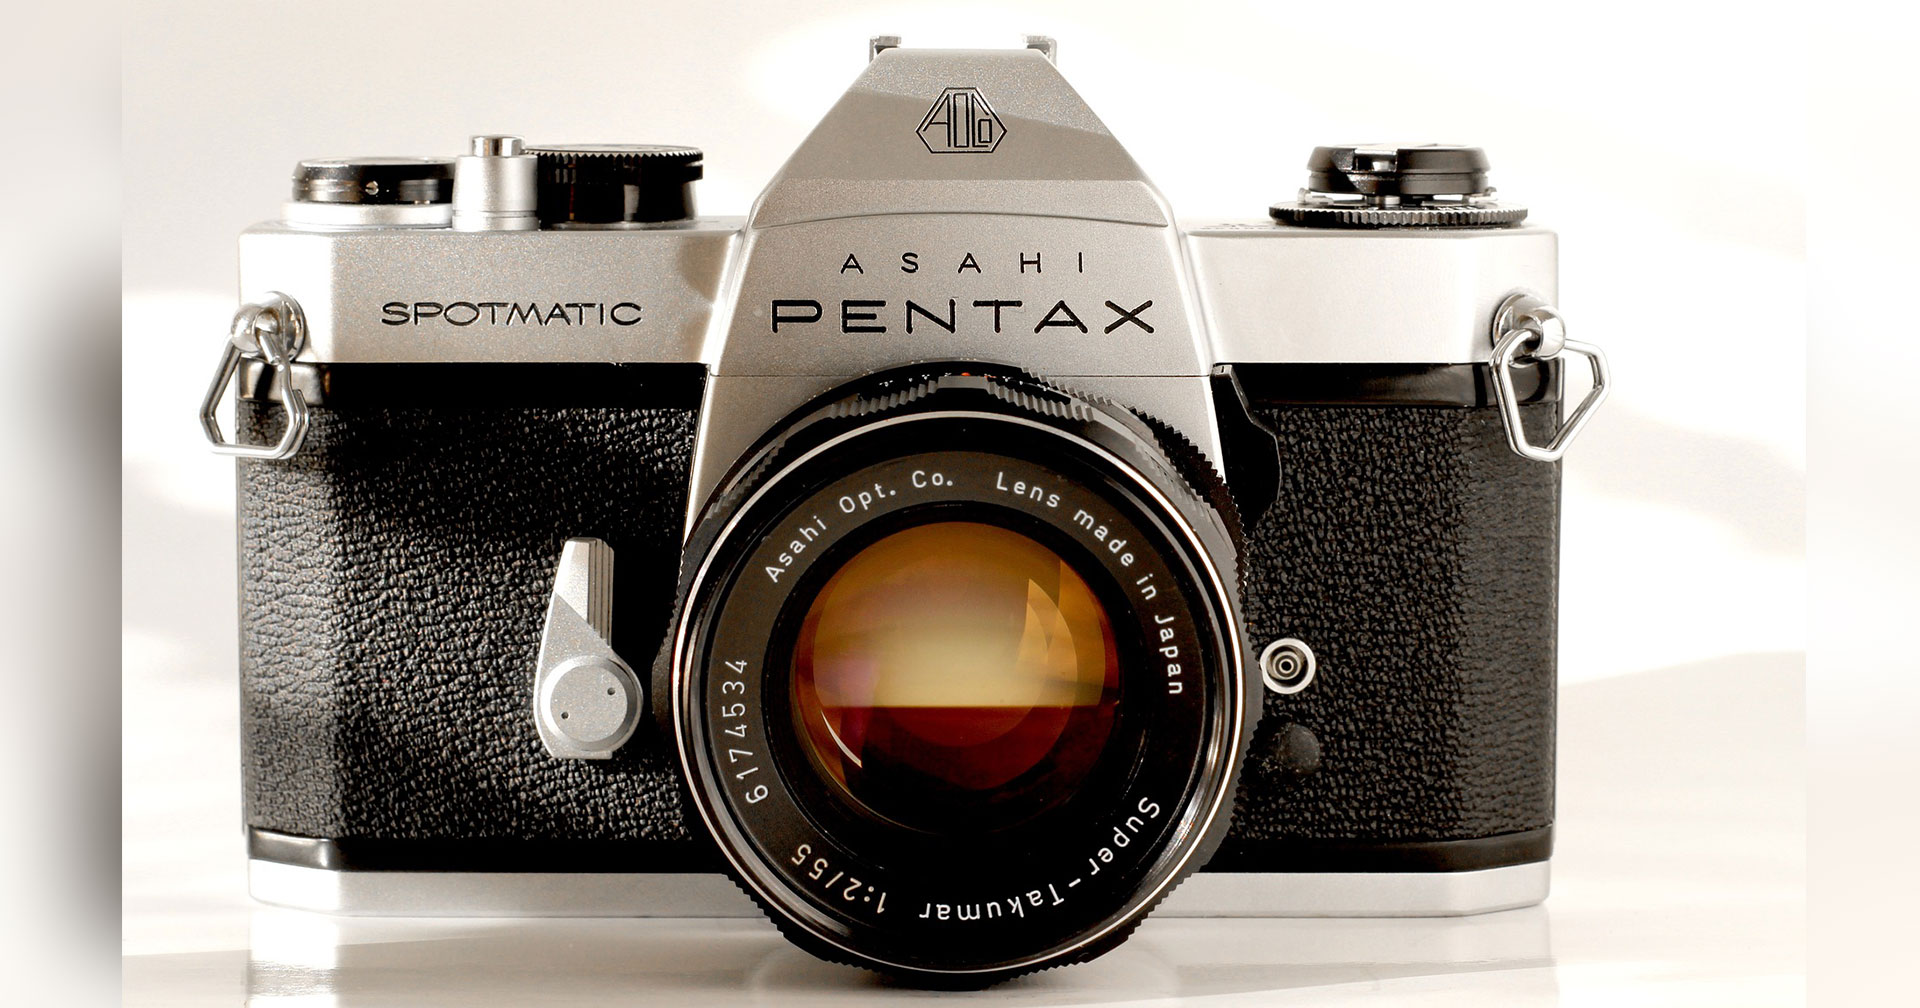 PENTAX เริ่มต้น ‘Film Project’ เตรียมออกกล้องฟิล์มรุ่นใหม่ เอาใจสาย Analog